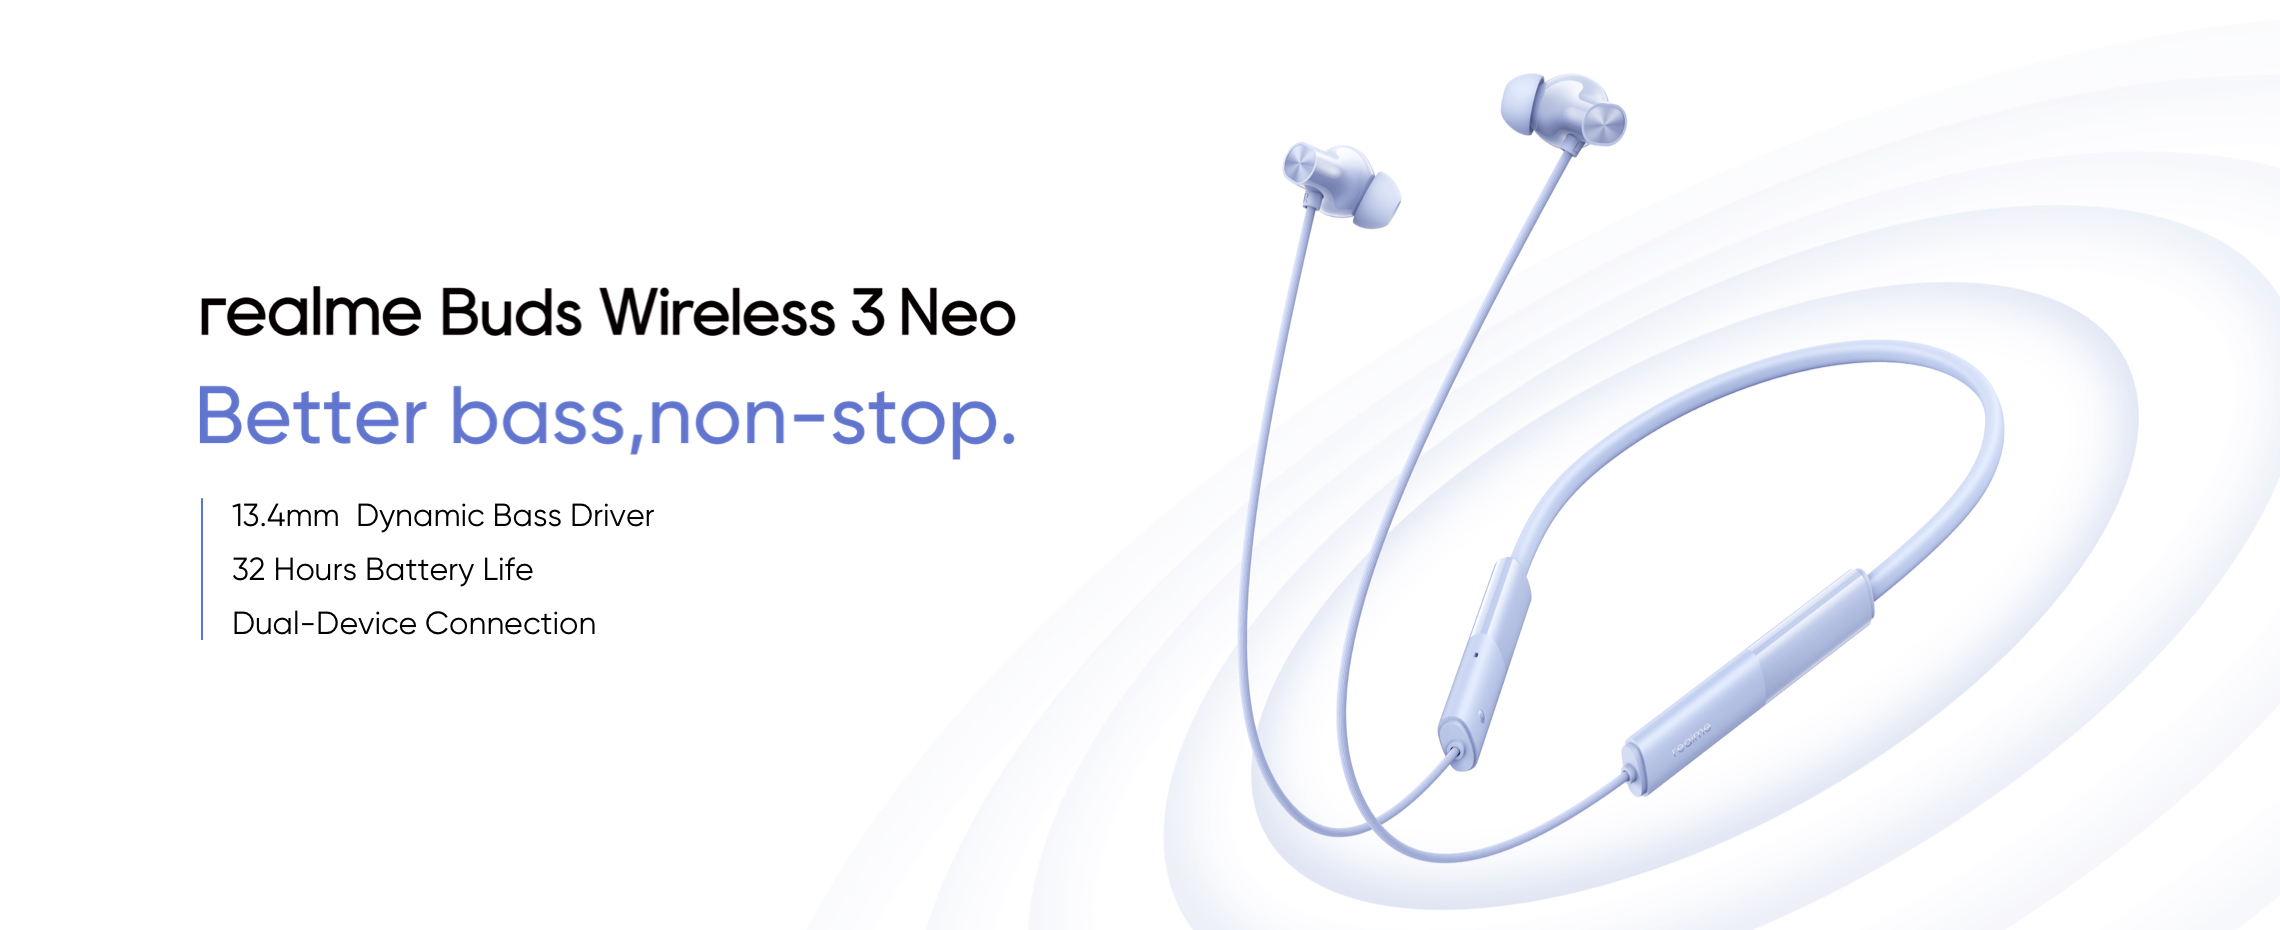 realme tillkännagav Buds Wireless 3 Neo med Bluetooth 5.4, Google Fast Pair och upp till 32 timmars batteritid för $16